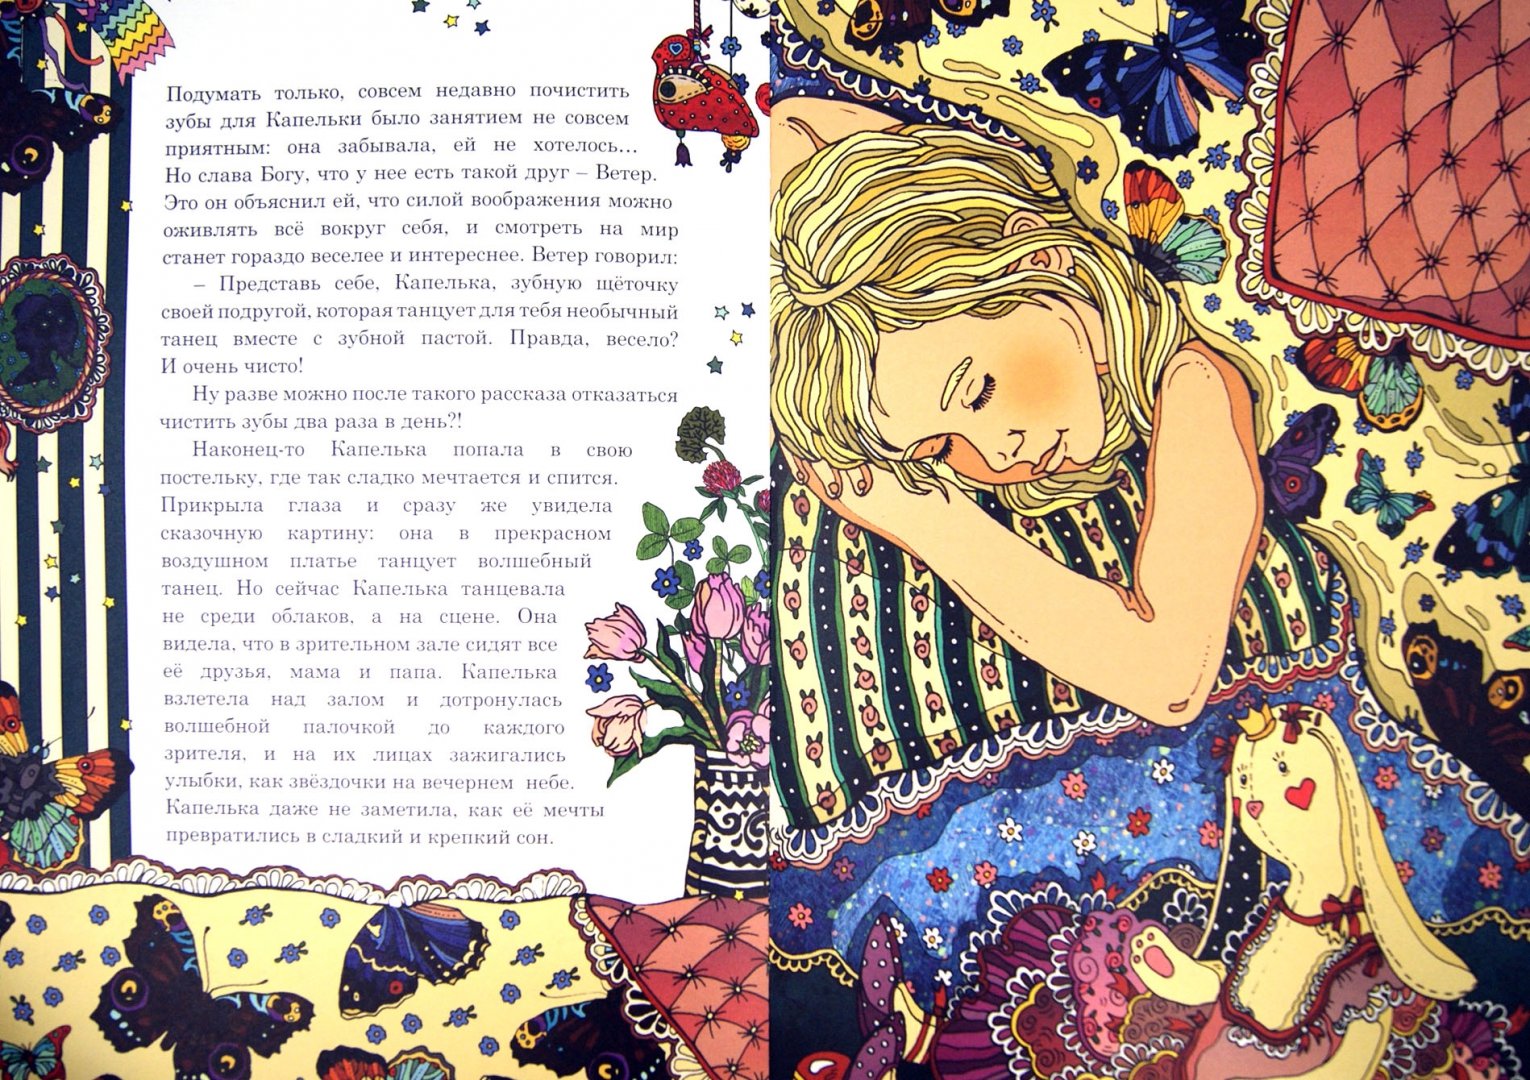 Иллюстрация 1 из 7 для История о Капельке и о том, как исполнить свою мечту - Ирина Данилова | Лабиринт - книги. Источник: Лабиринт